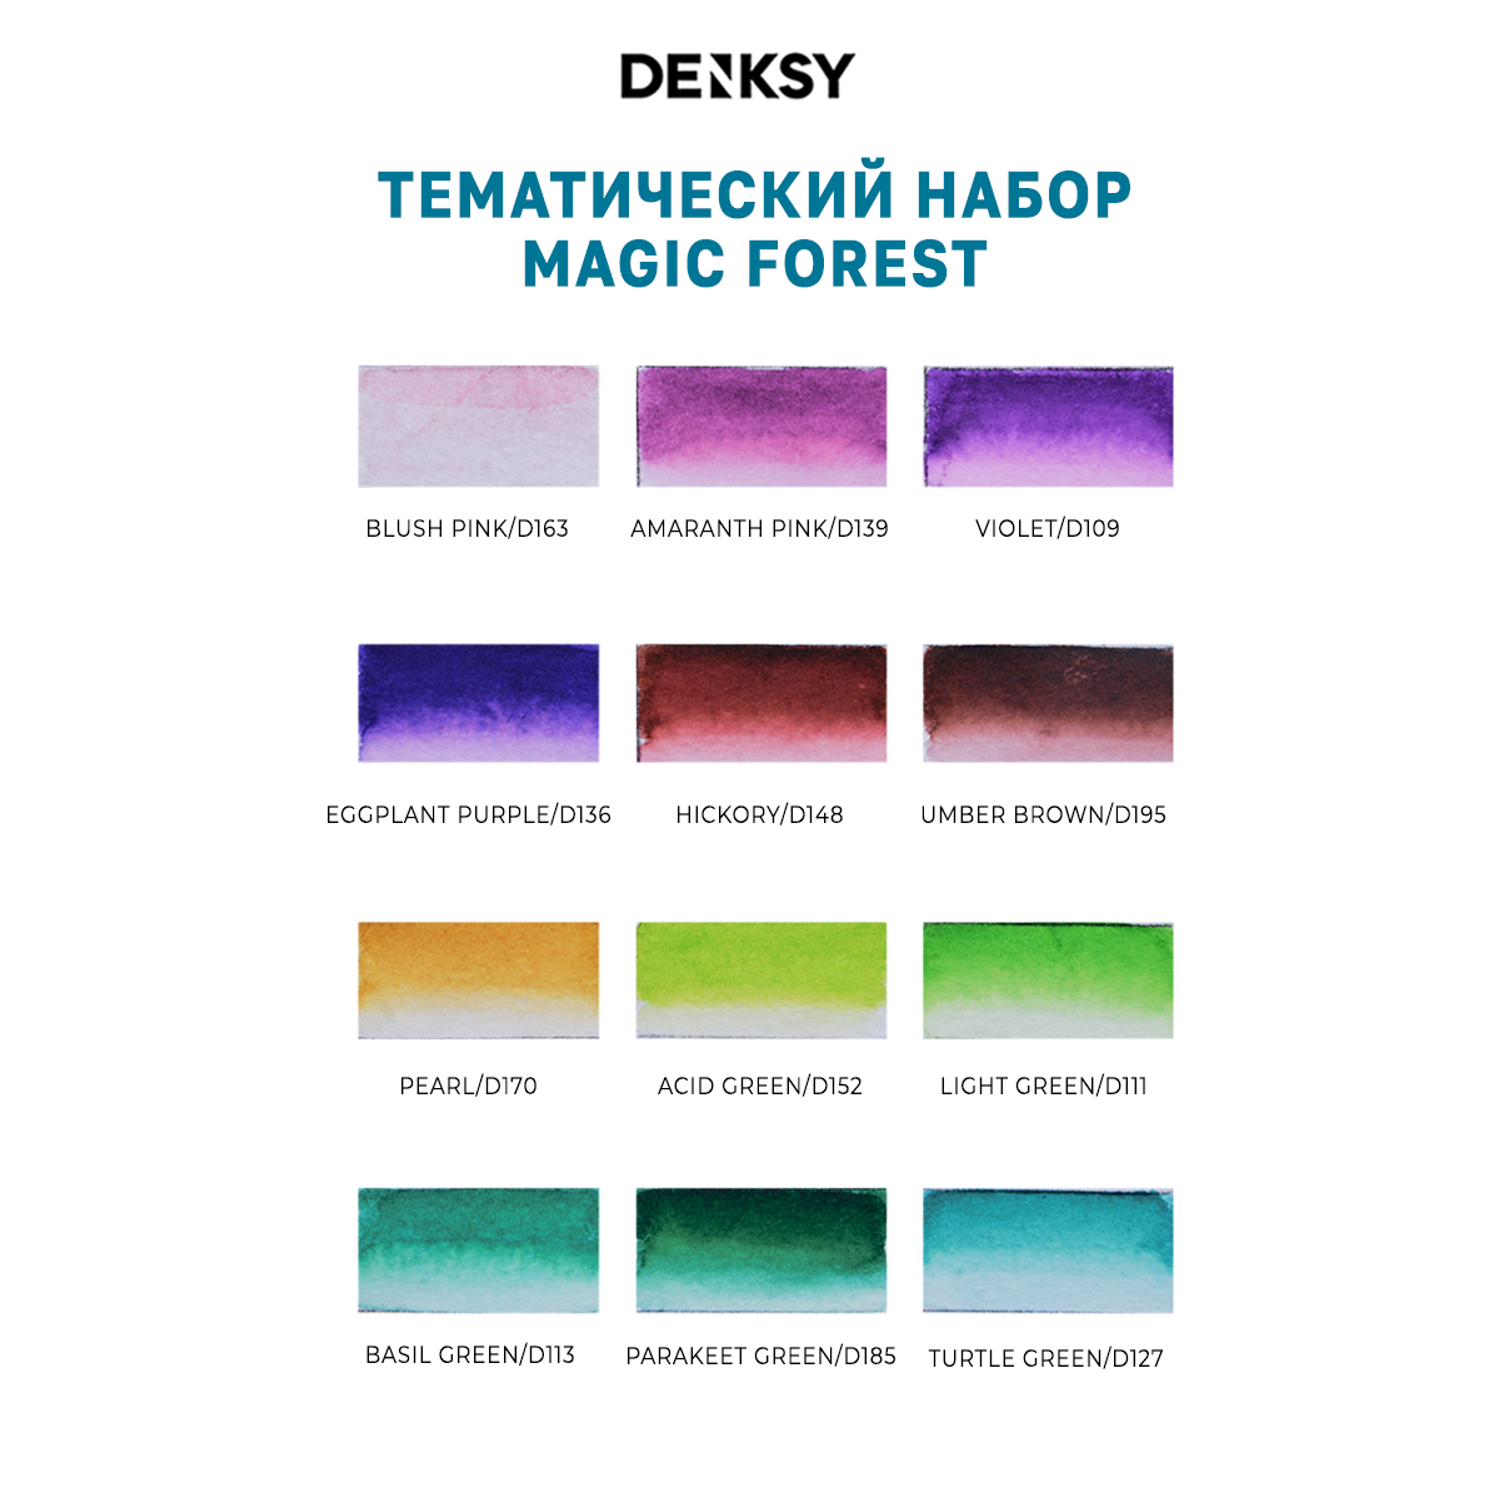 Акварельные маркеры DENKSY 12 Magic Forest цветов в черном корпусе и 1 кисть с резервуаром - фото 3